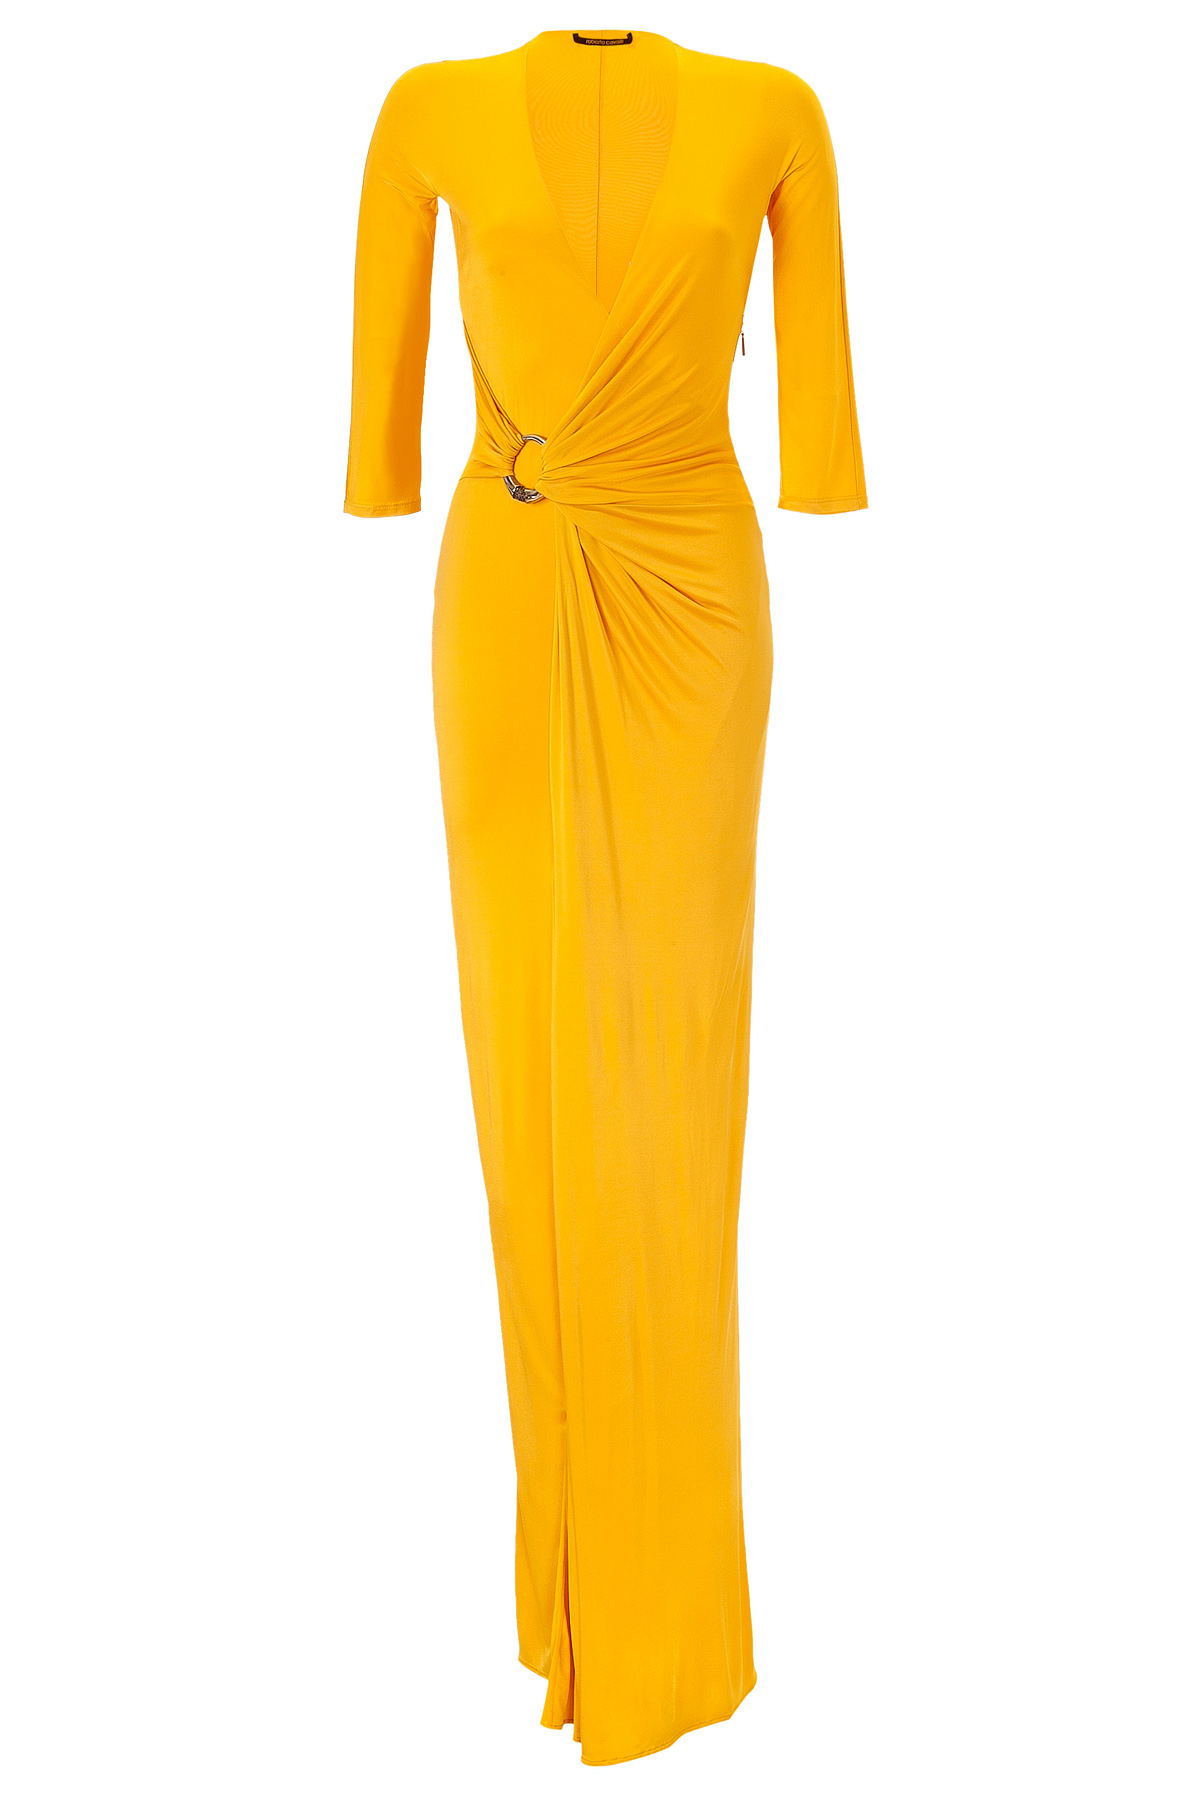 Roberto cavalli Sunflower Draped Dress in Yellow | Lyst